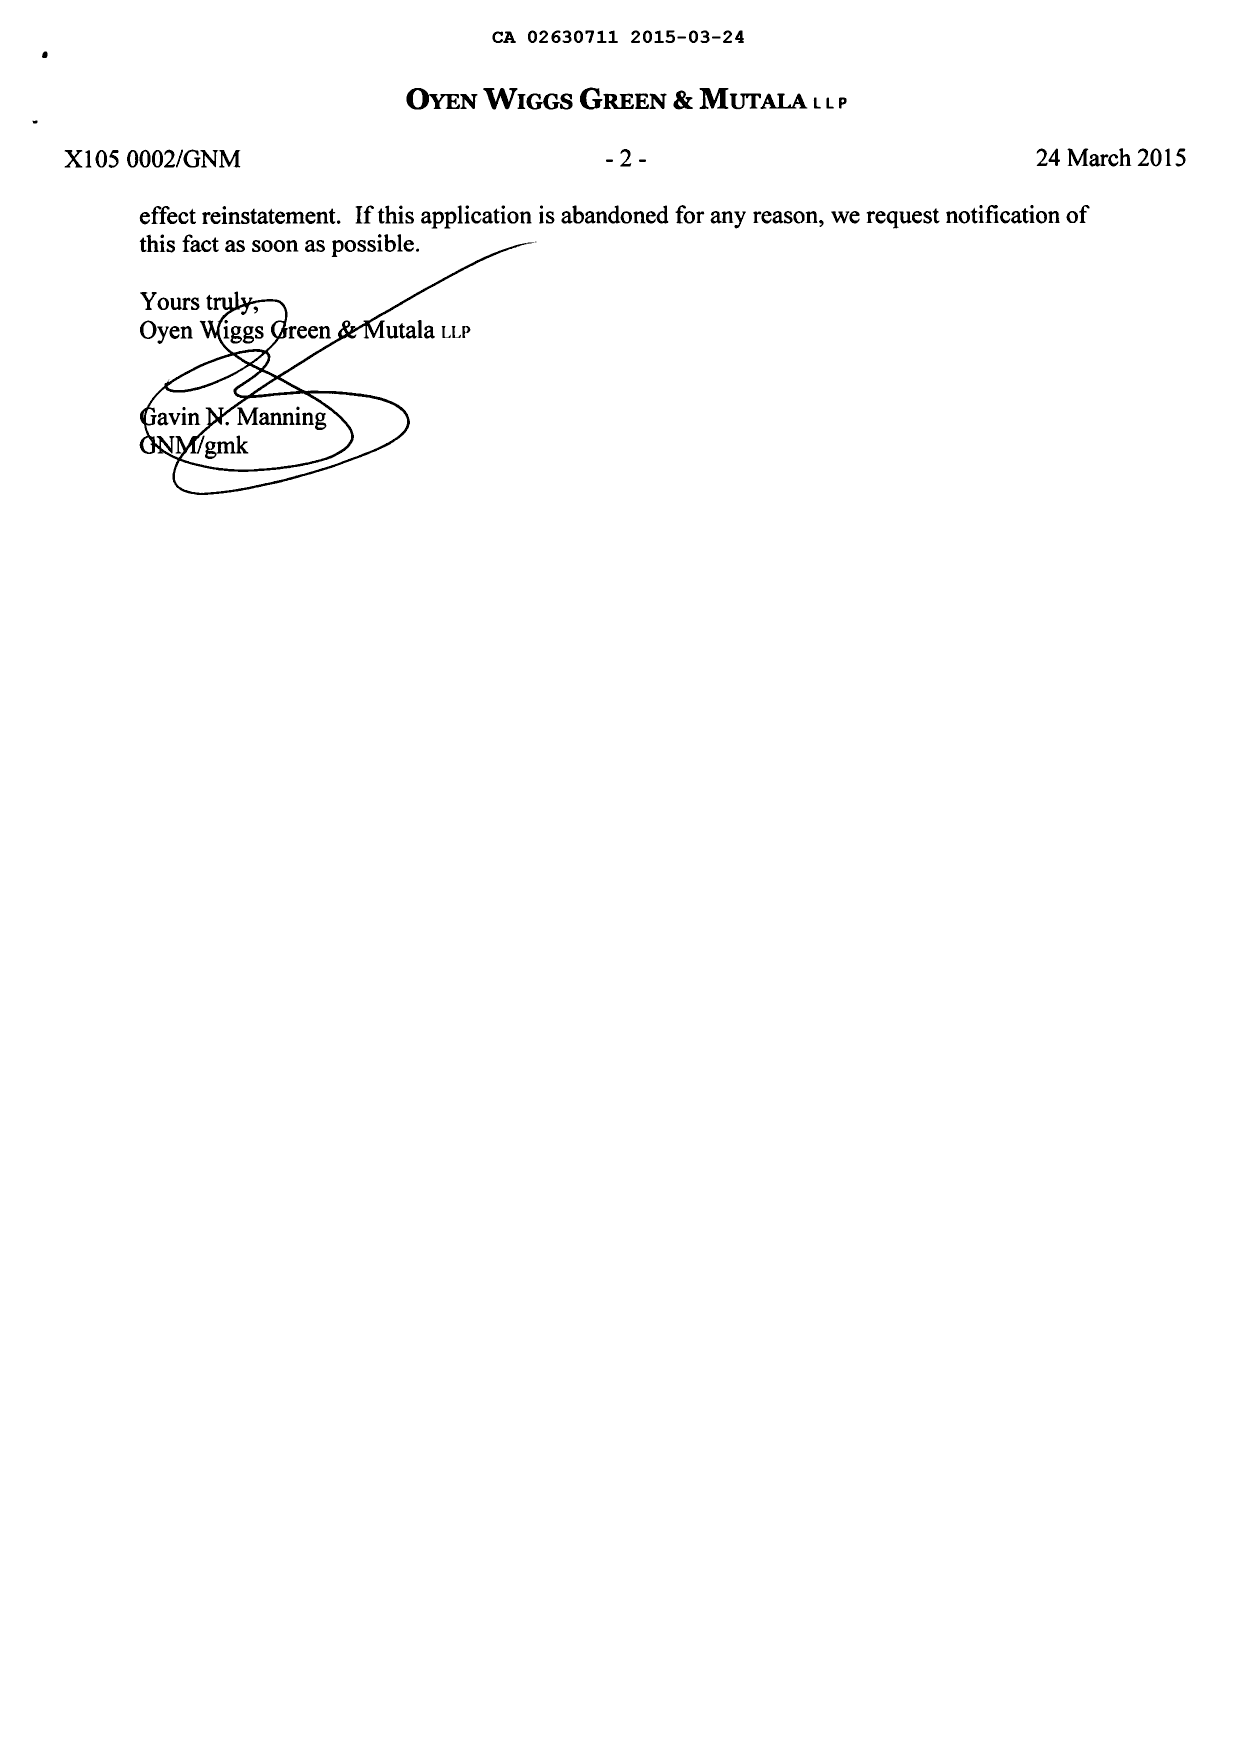 Document de brevet canadien 2630711. Correspondance 20150324. Image 2 de 2